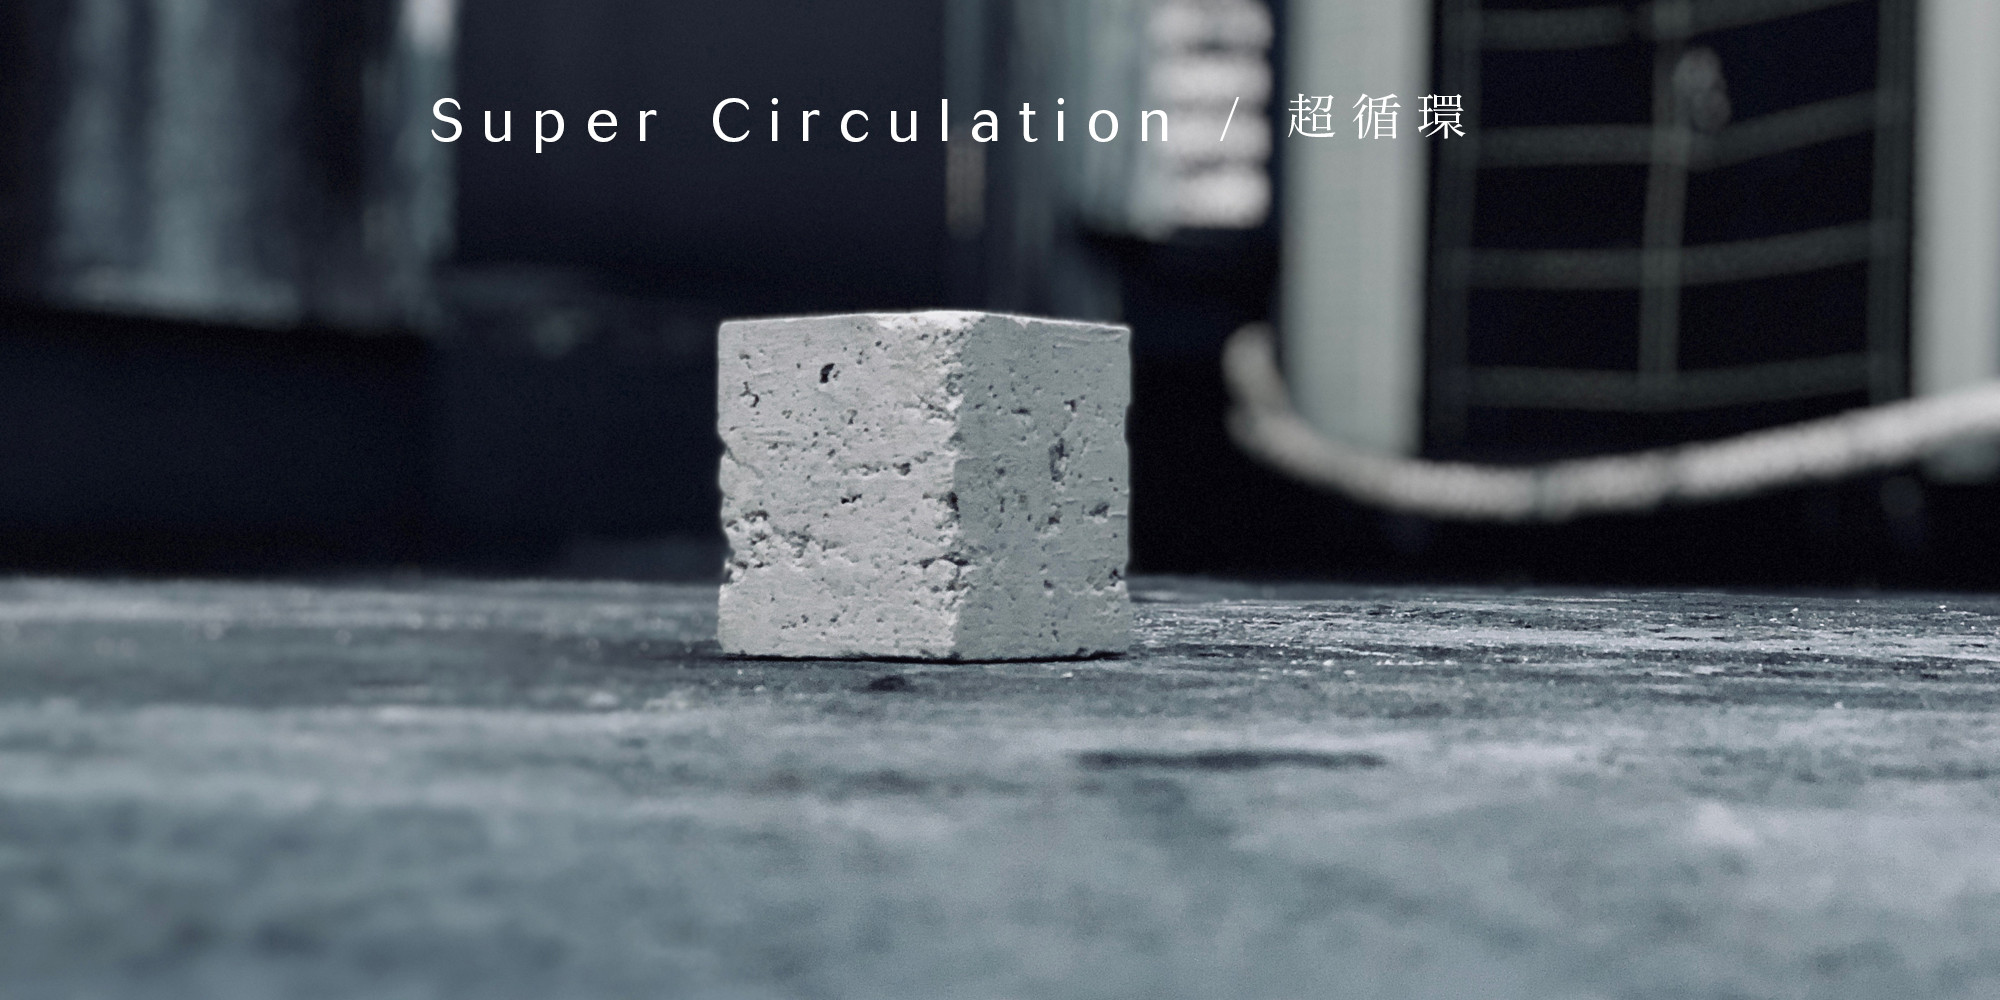 Super Circulation / 超循環